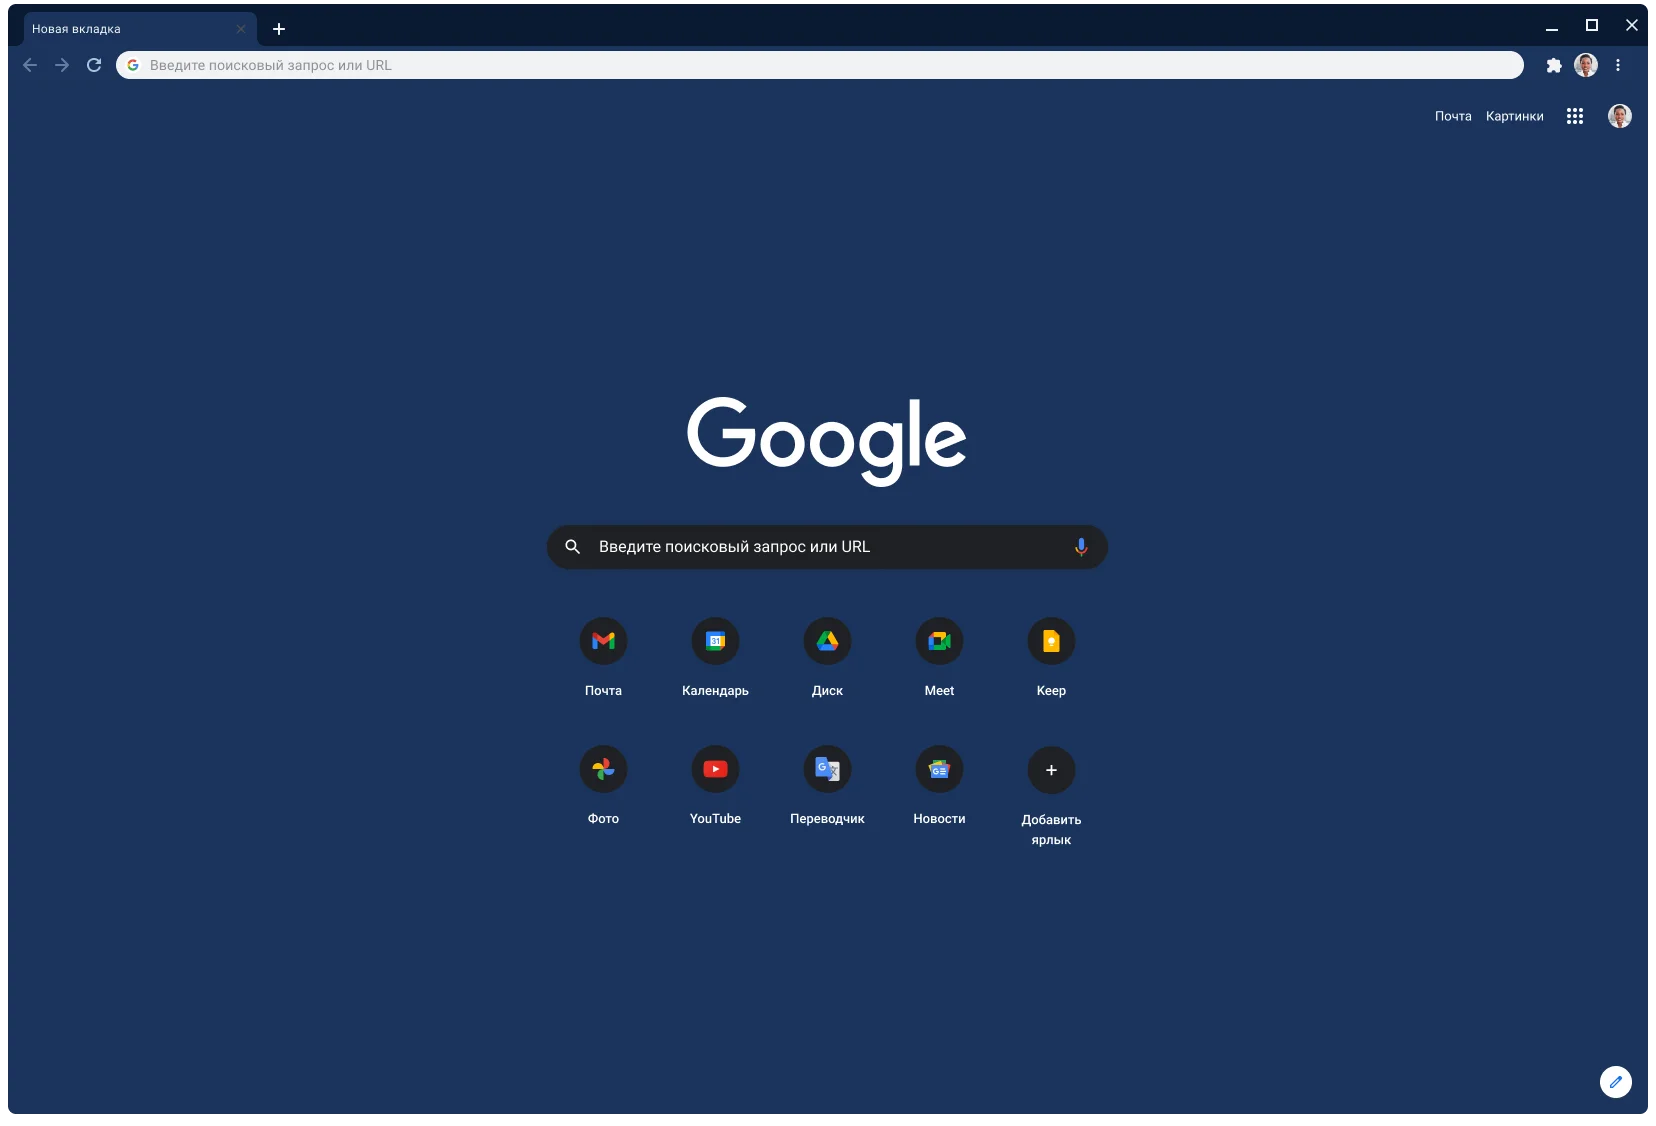 Окно браузера Chrome с установленной серой темой, в котором открыта страница сайта google.com.